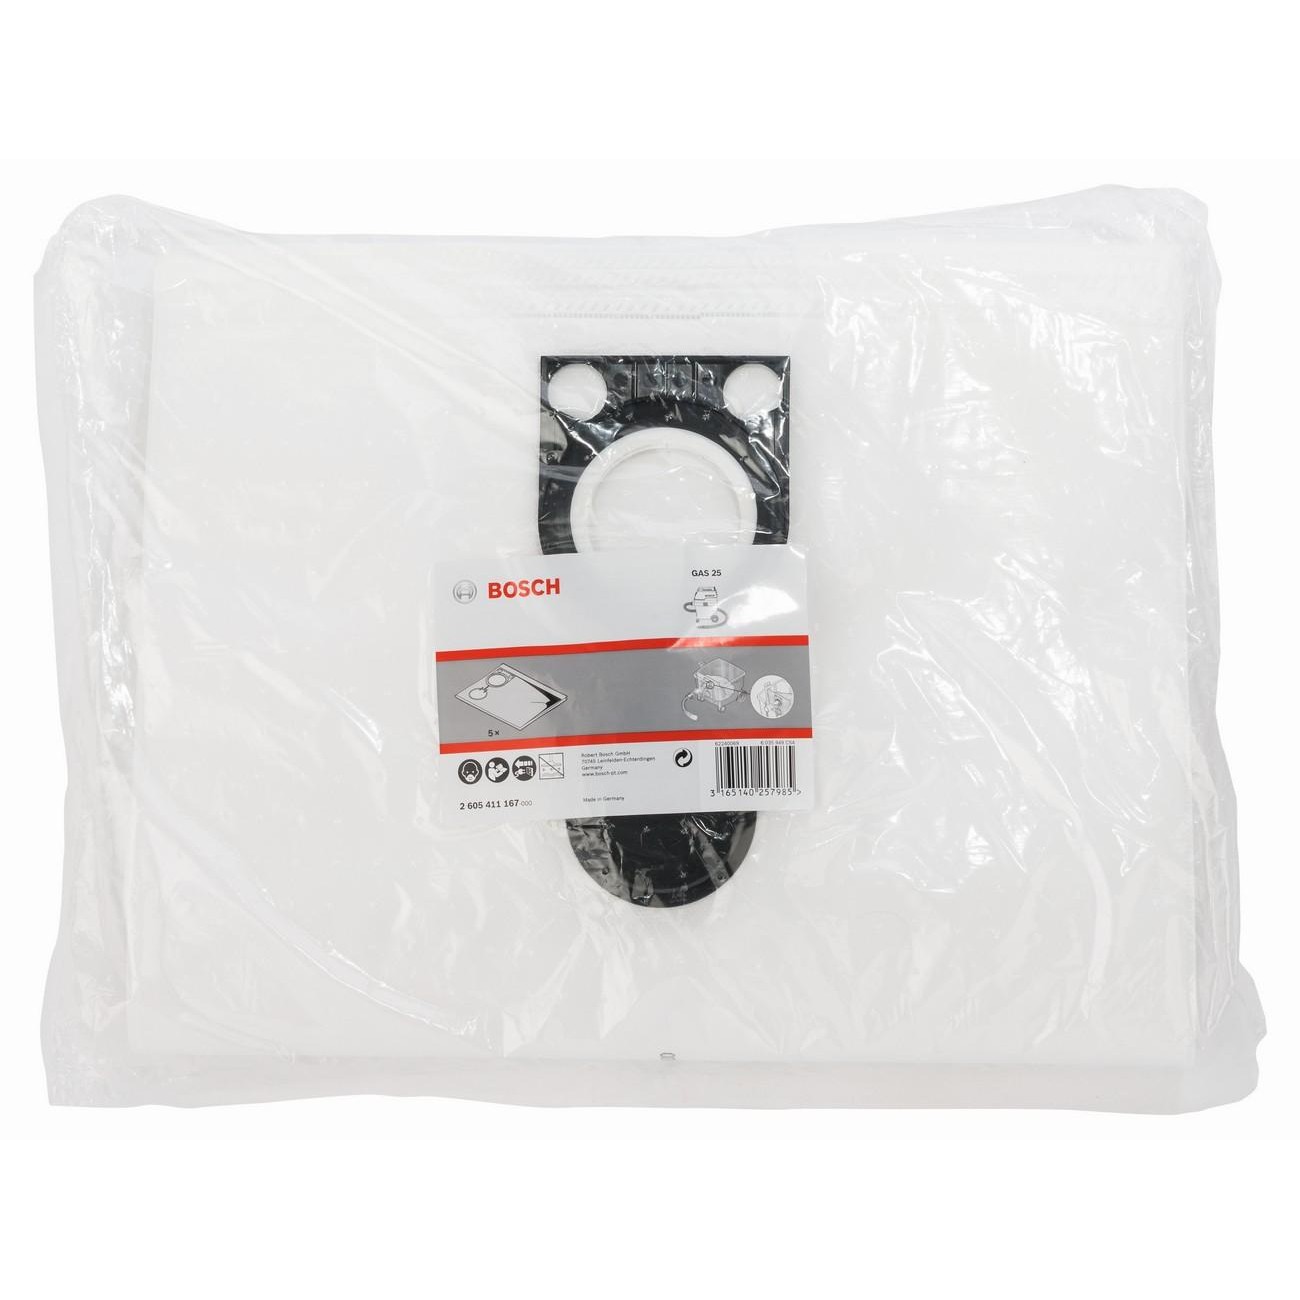 BOSCH Professional Филтърна торба нетъкан текстил (2605411167)